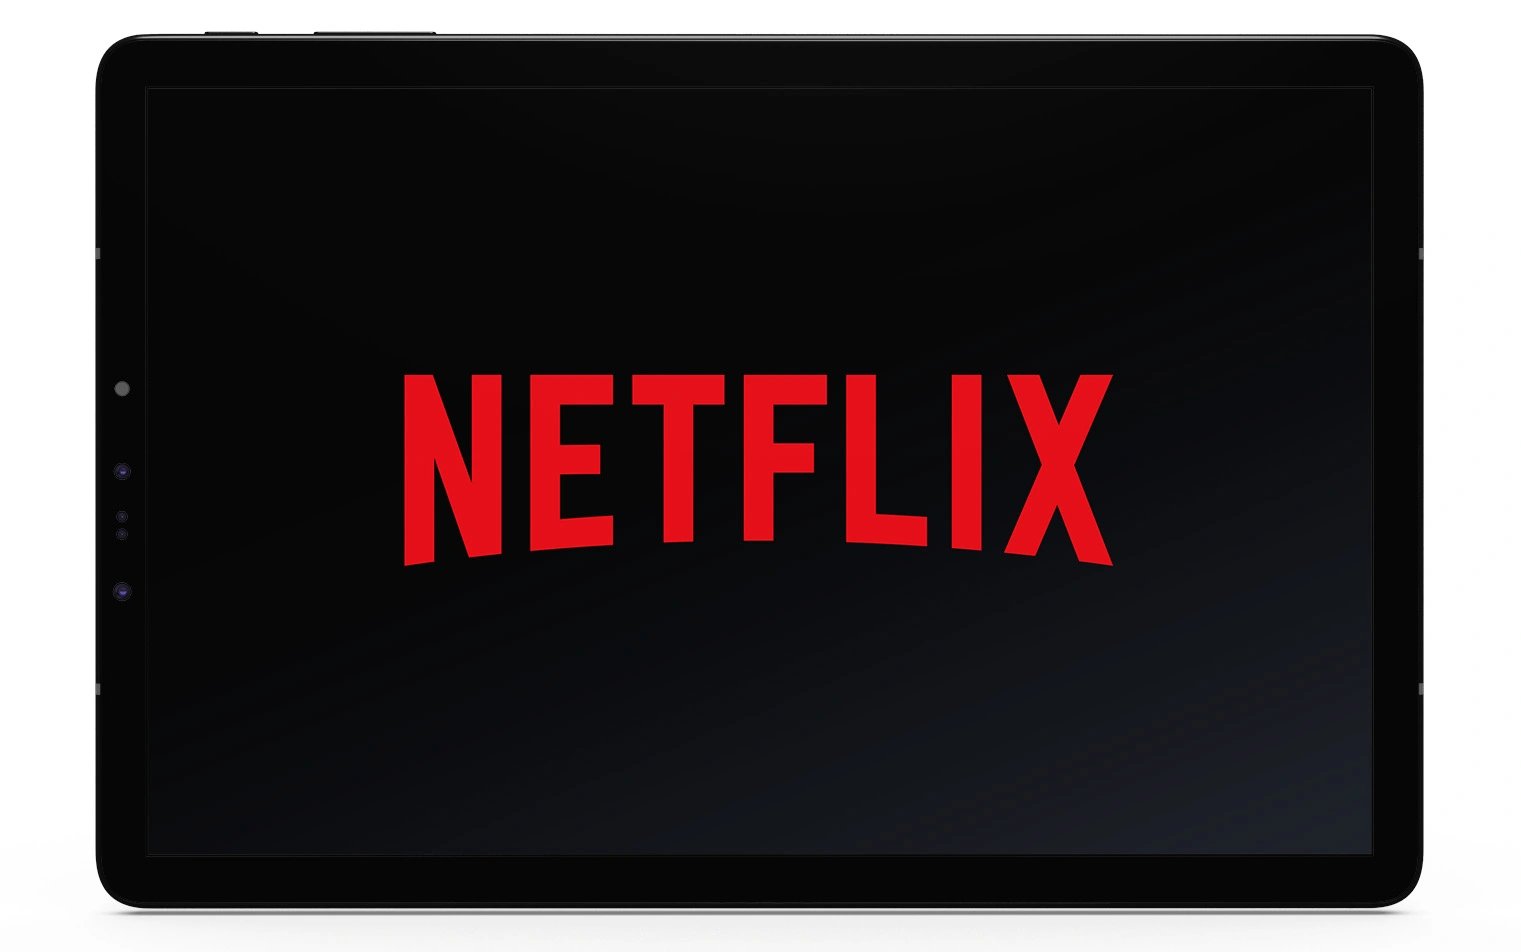 Netflix logo displayed in a tablet frame